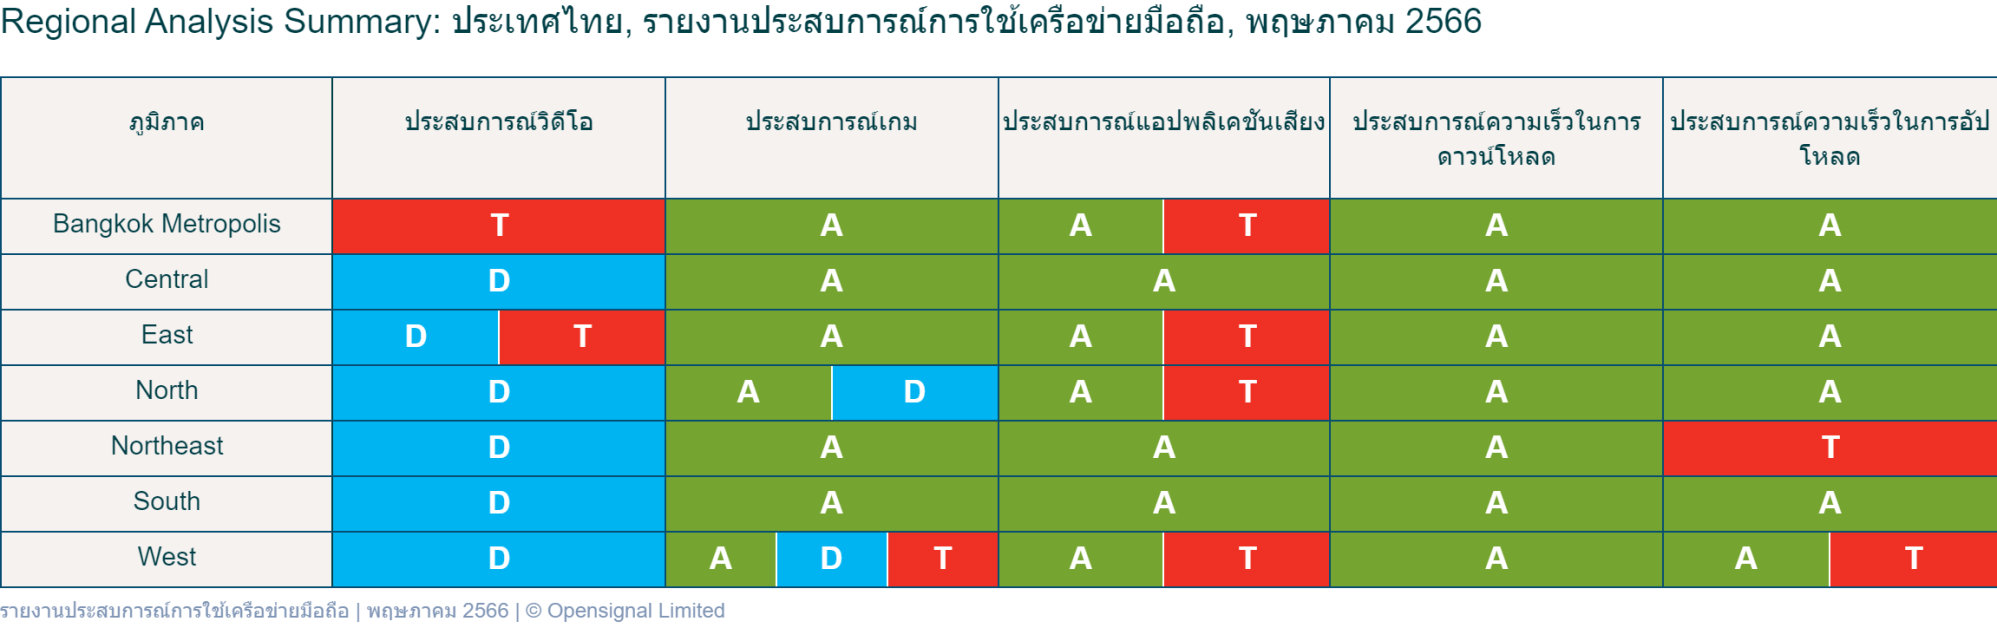 Opensignal เผยรายงานประสบการณ์เครือข่ายมือถือของประเทศไทย พฤษภาคม 2566